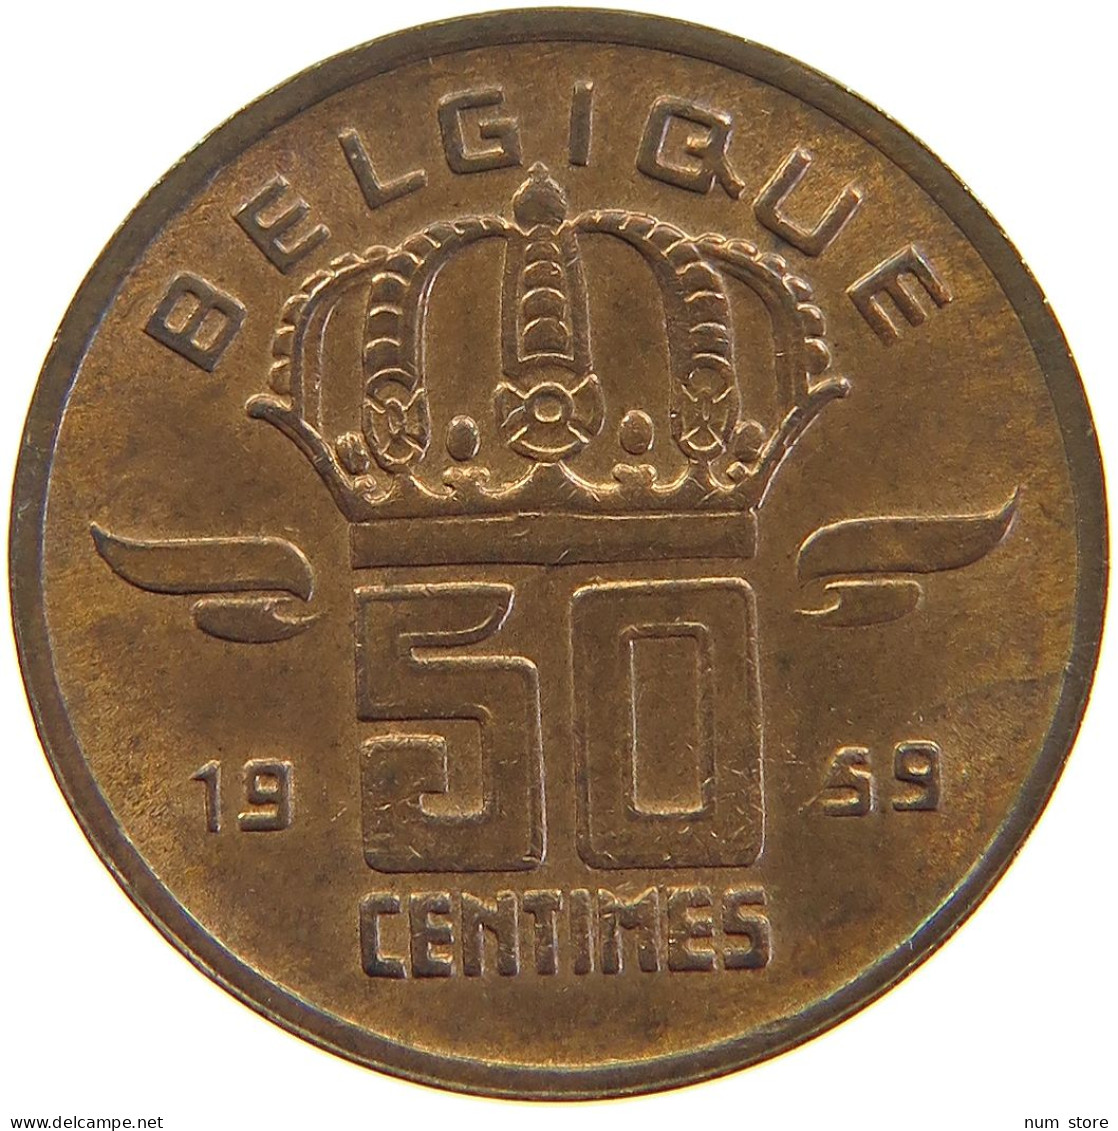 BELGIUM 50 CENTIMES 1959 #s105 0407 - 50 Centimes